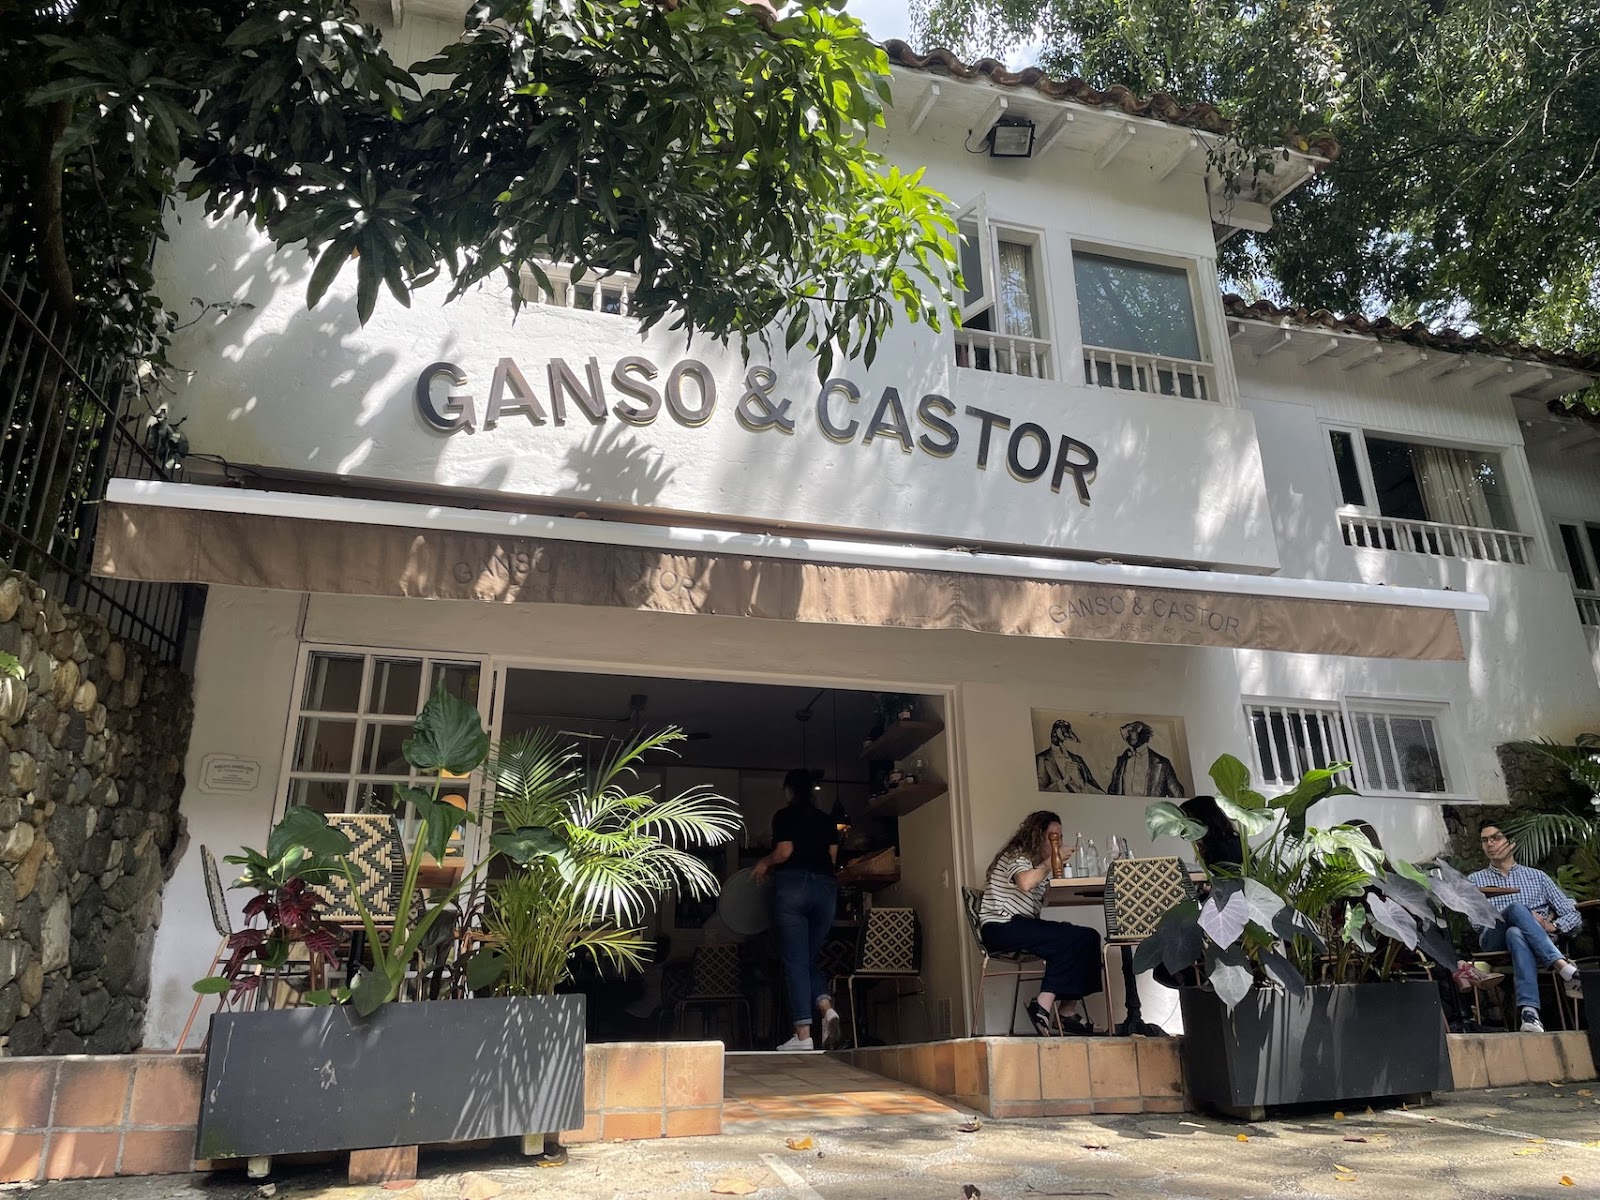 Ganso & Castor
